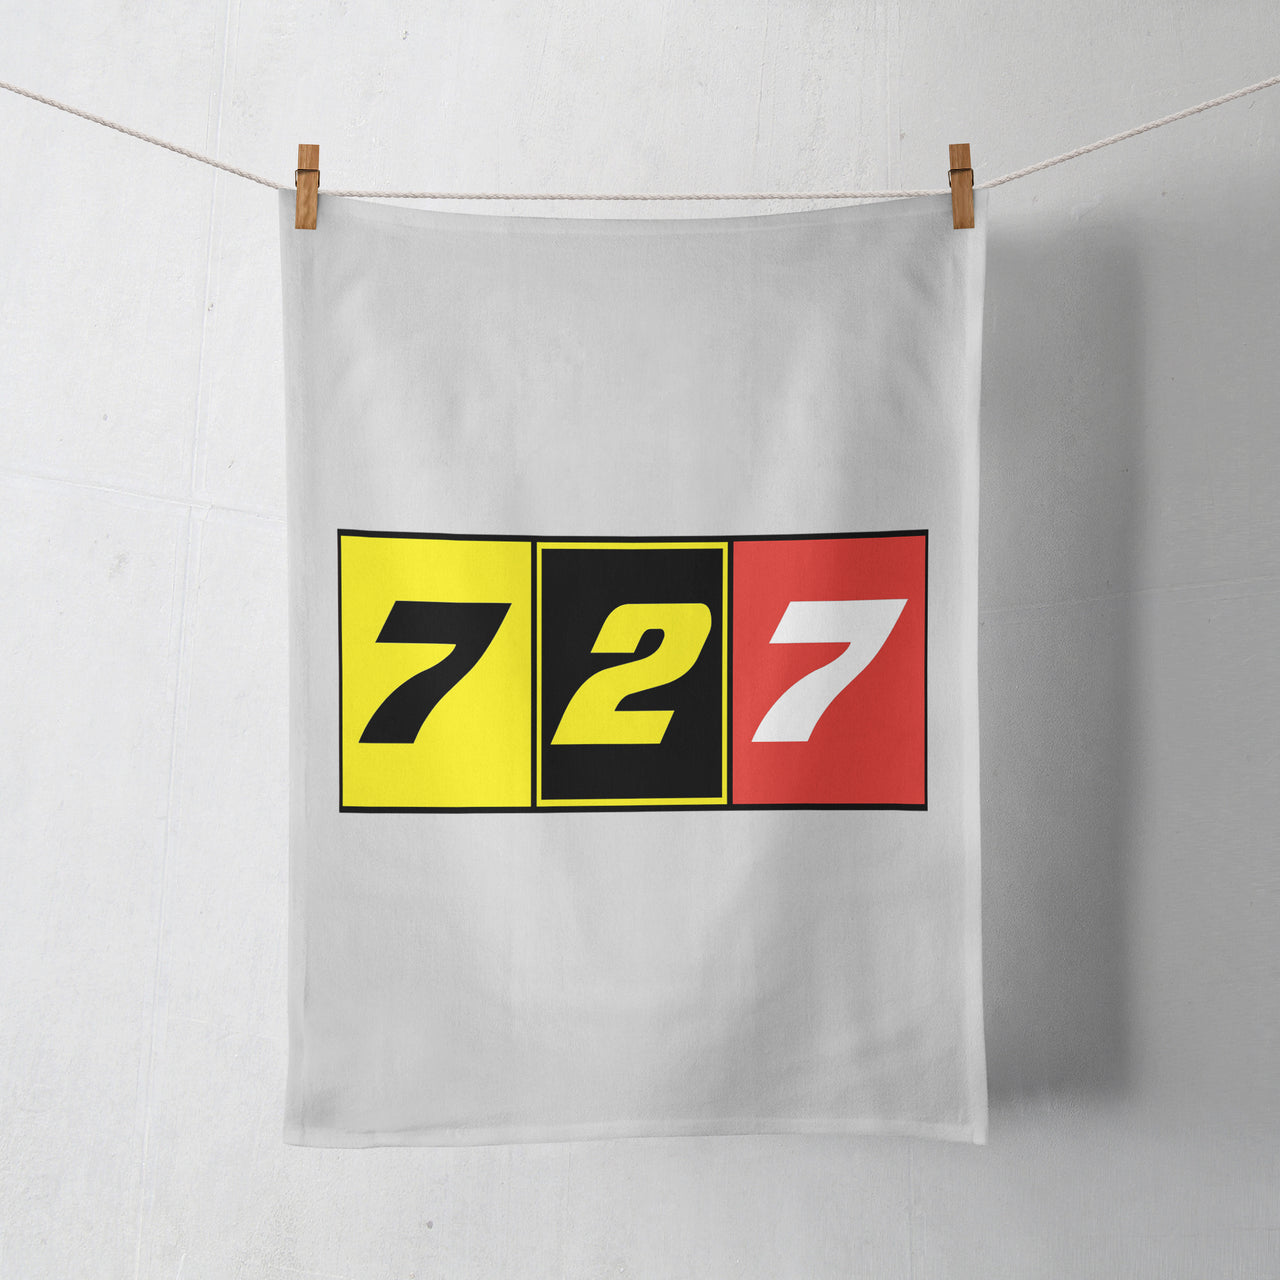 Flat Colourful 727 Designed Towels